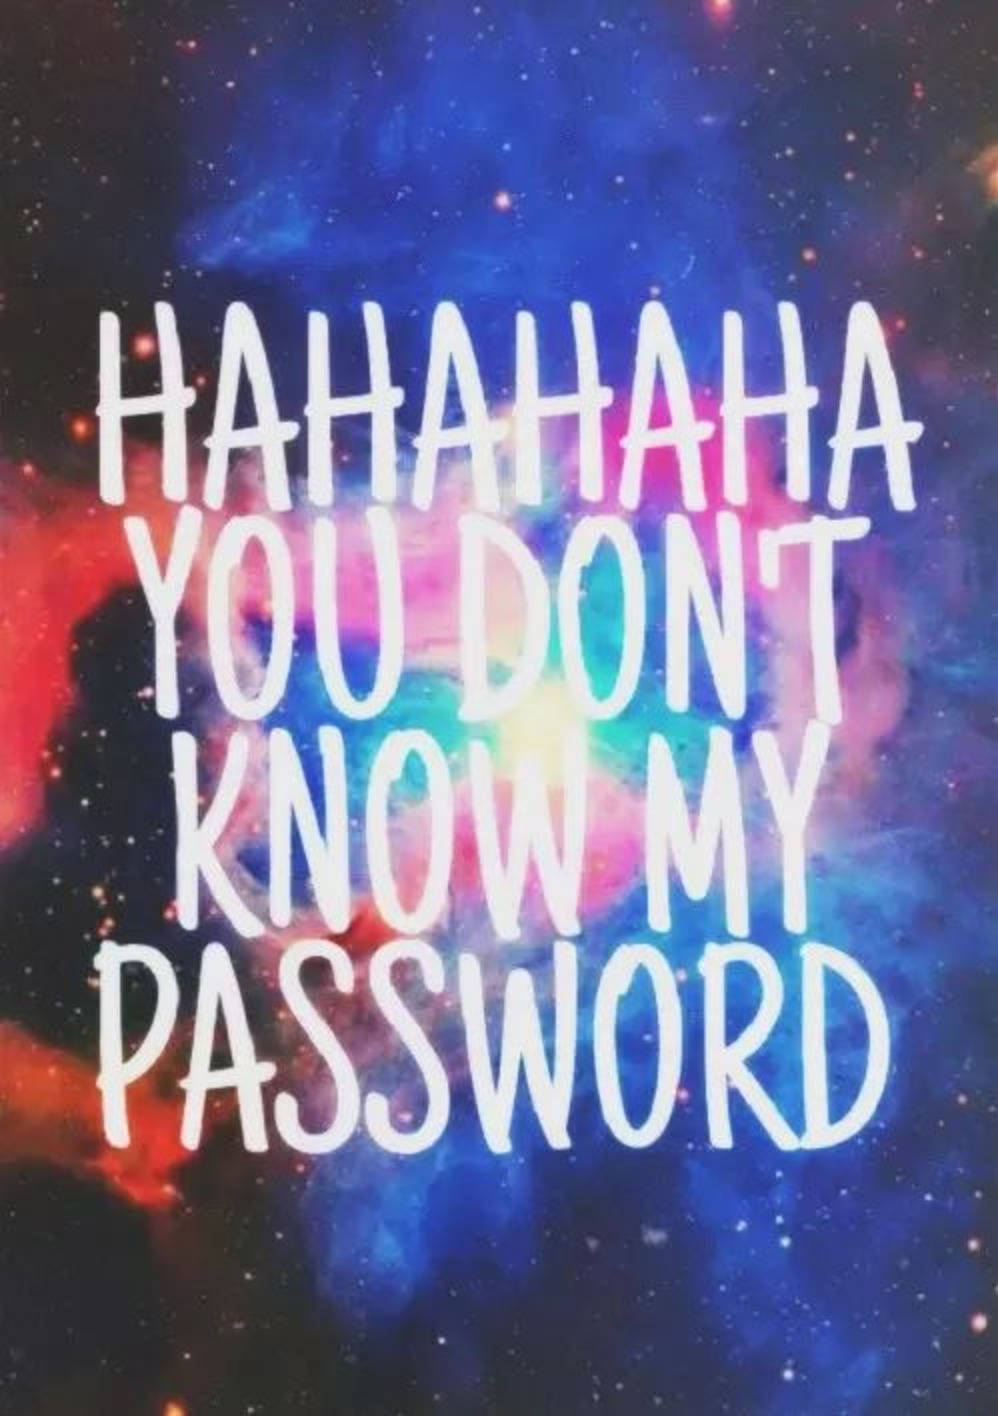 Hahahadu Känner Inte Mitt Lösenord. Wallpaper